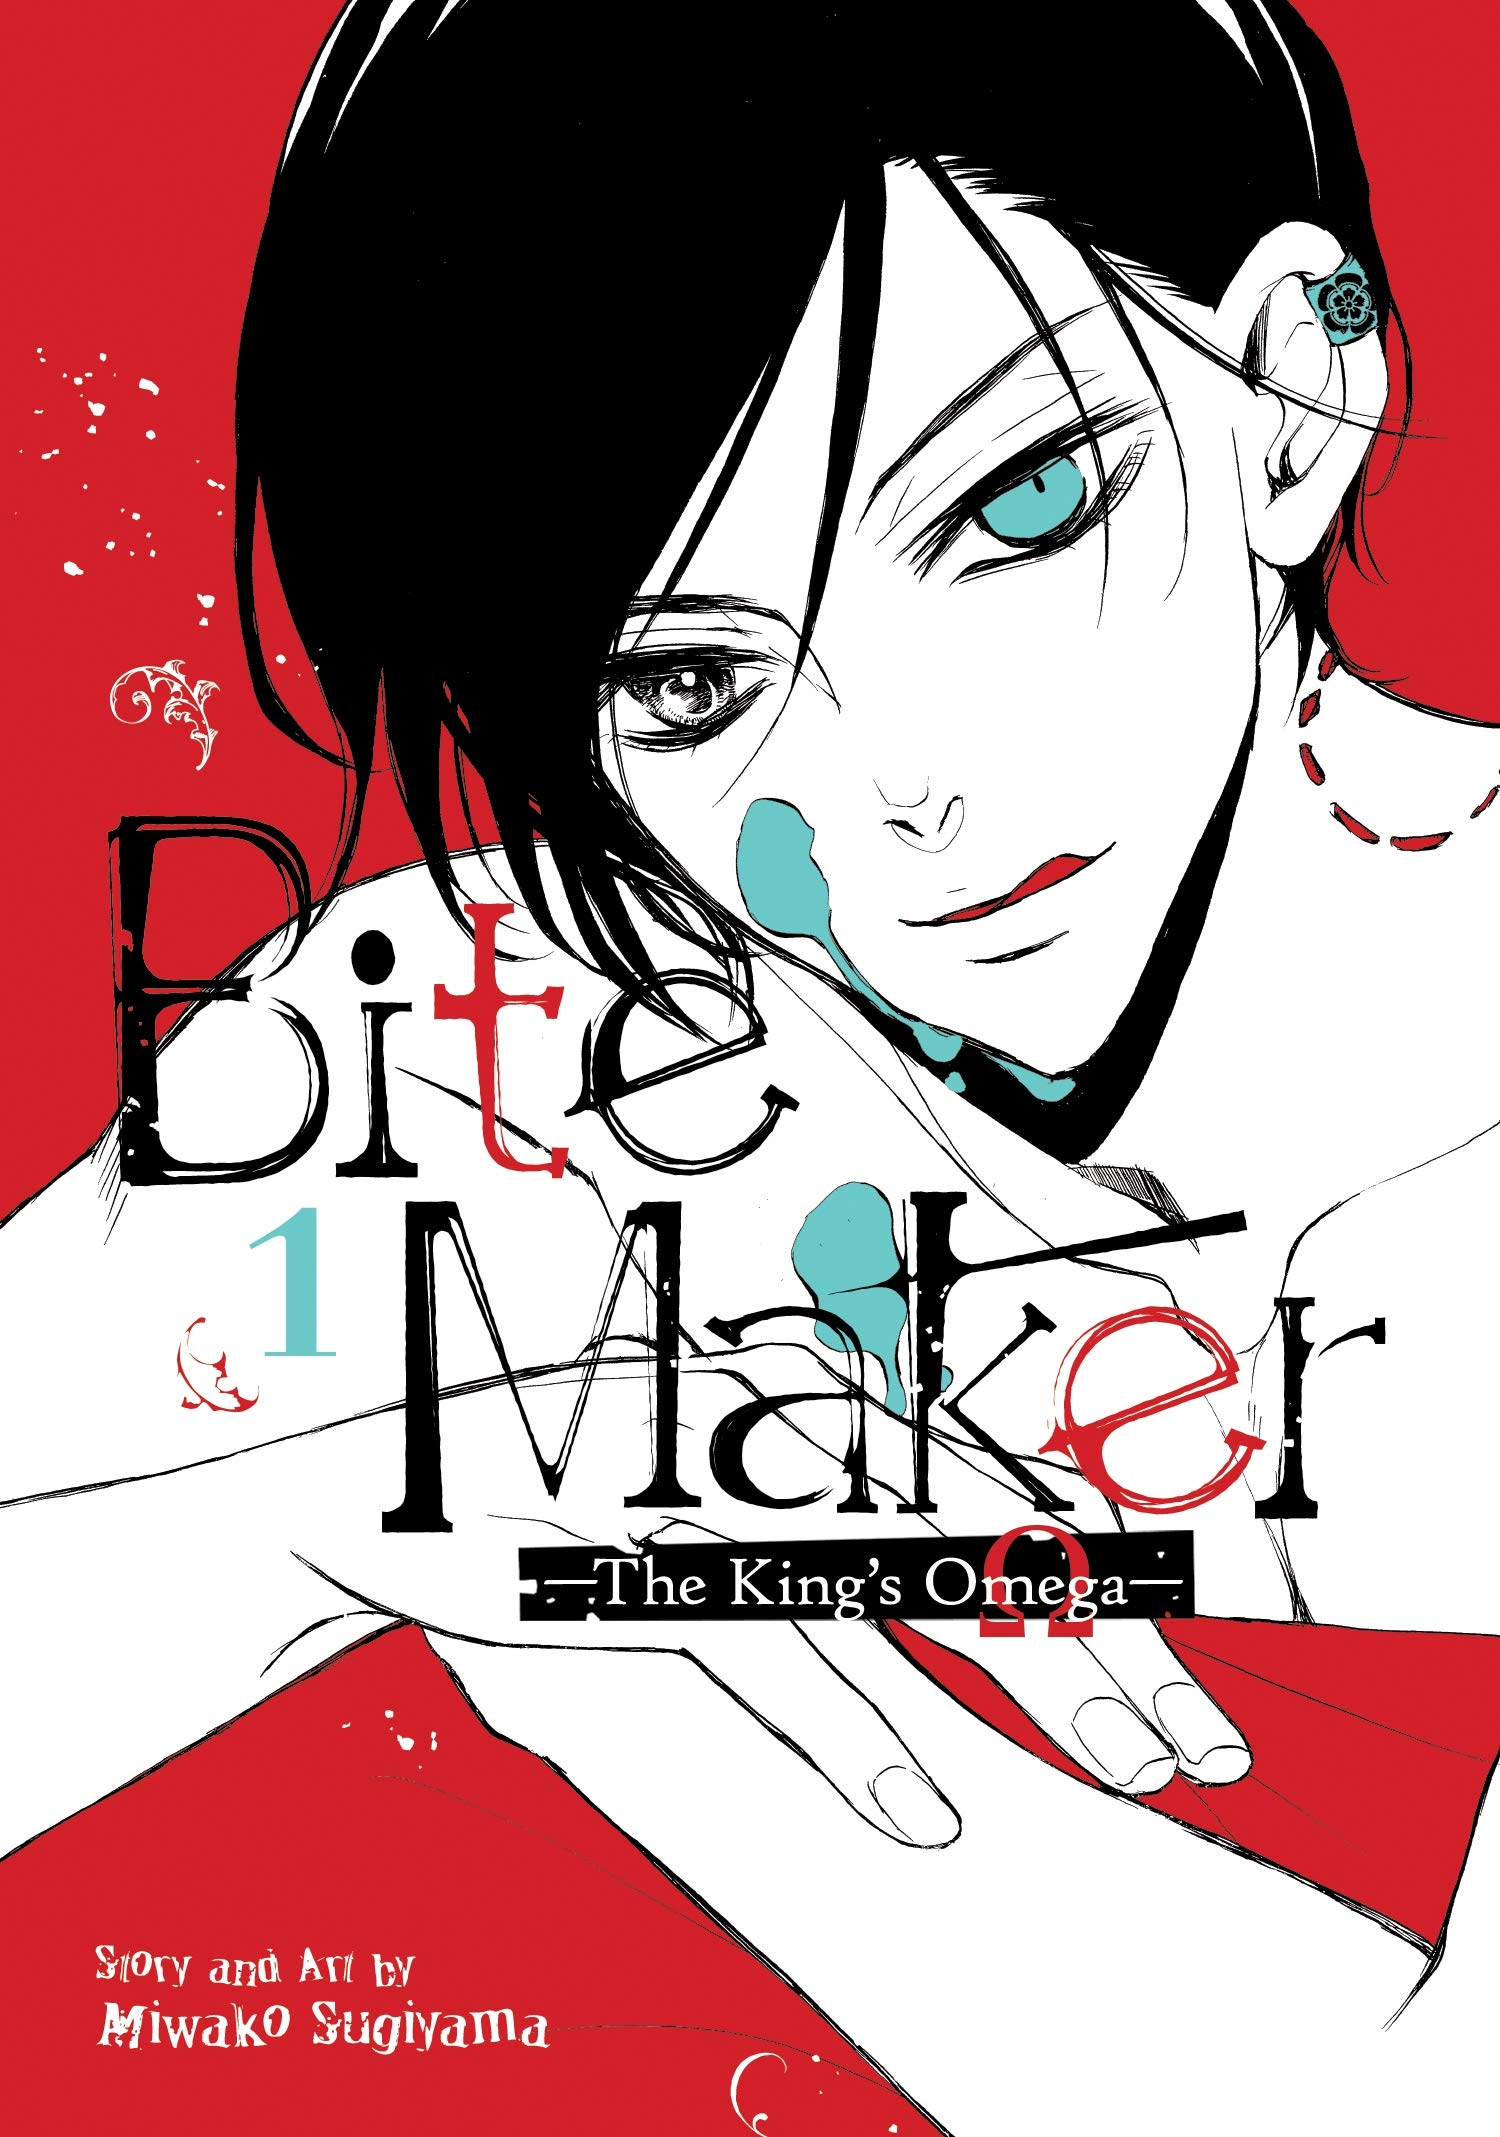 Bite Maker Kings Omega Manga Volume 1 (Mature)